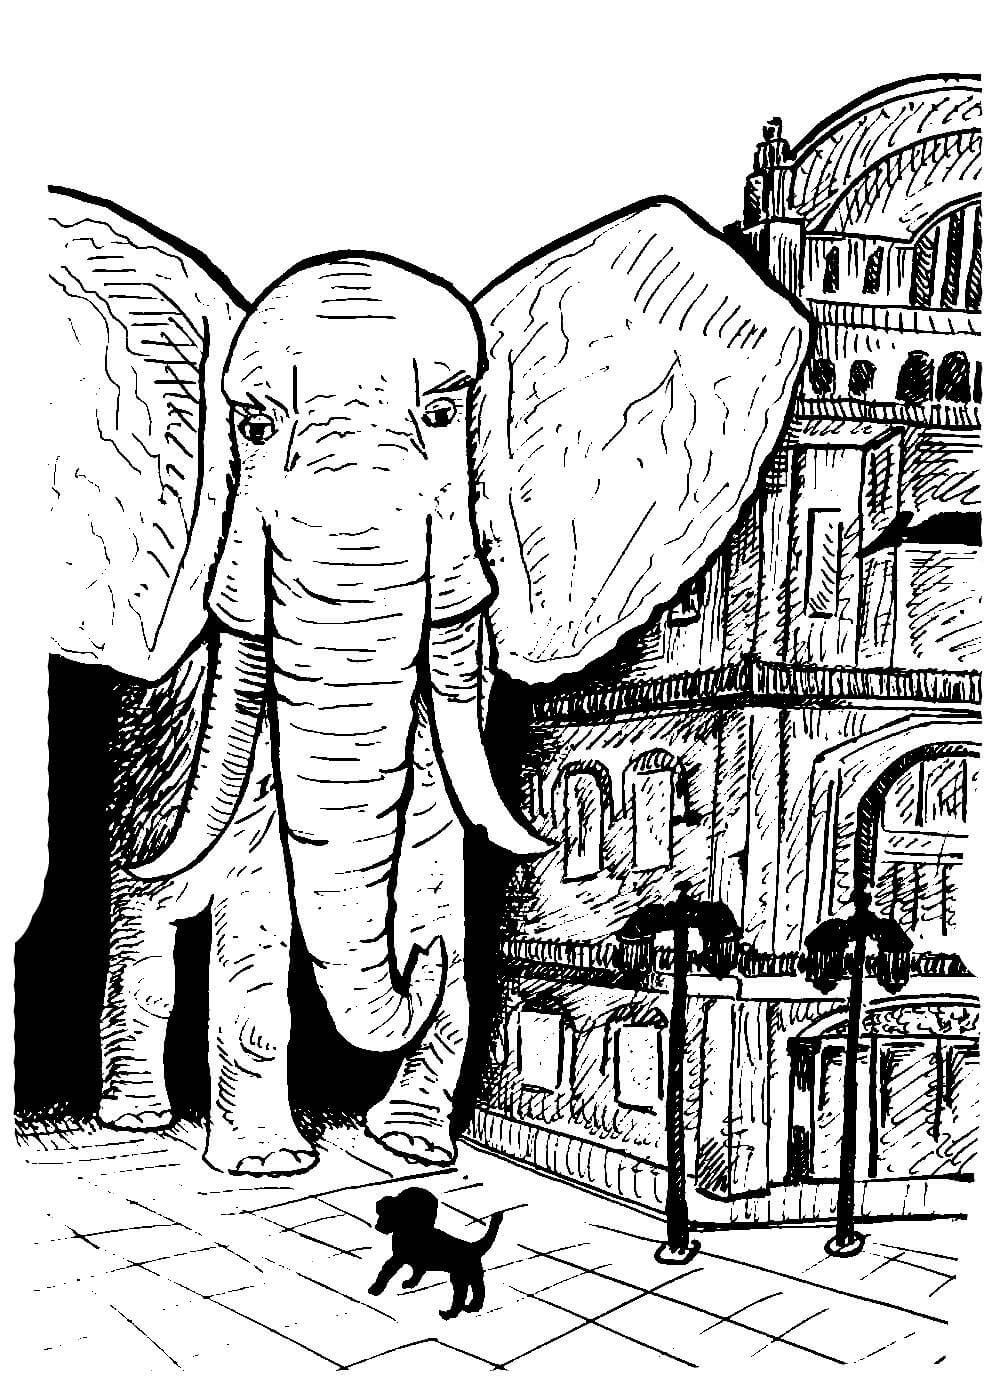 Раскраска слон и моська басня Крылова